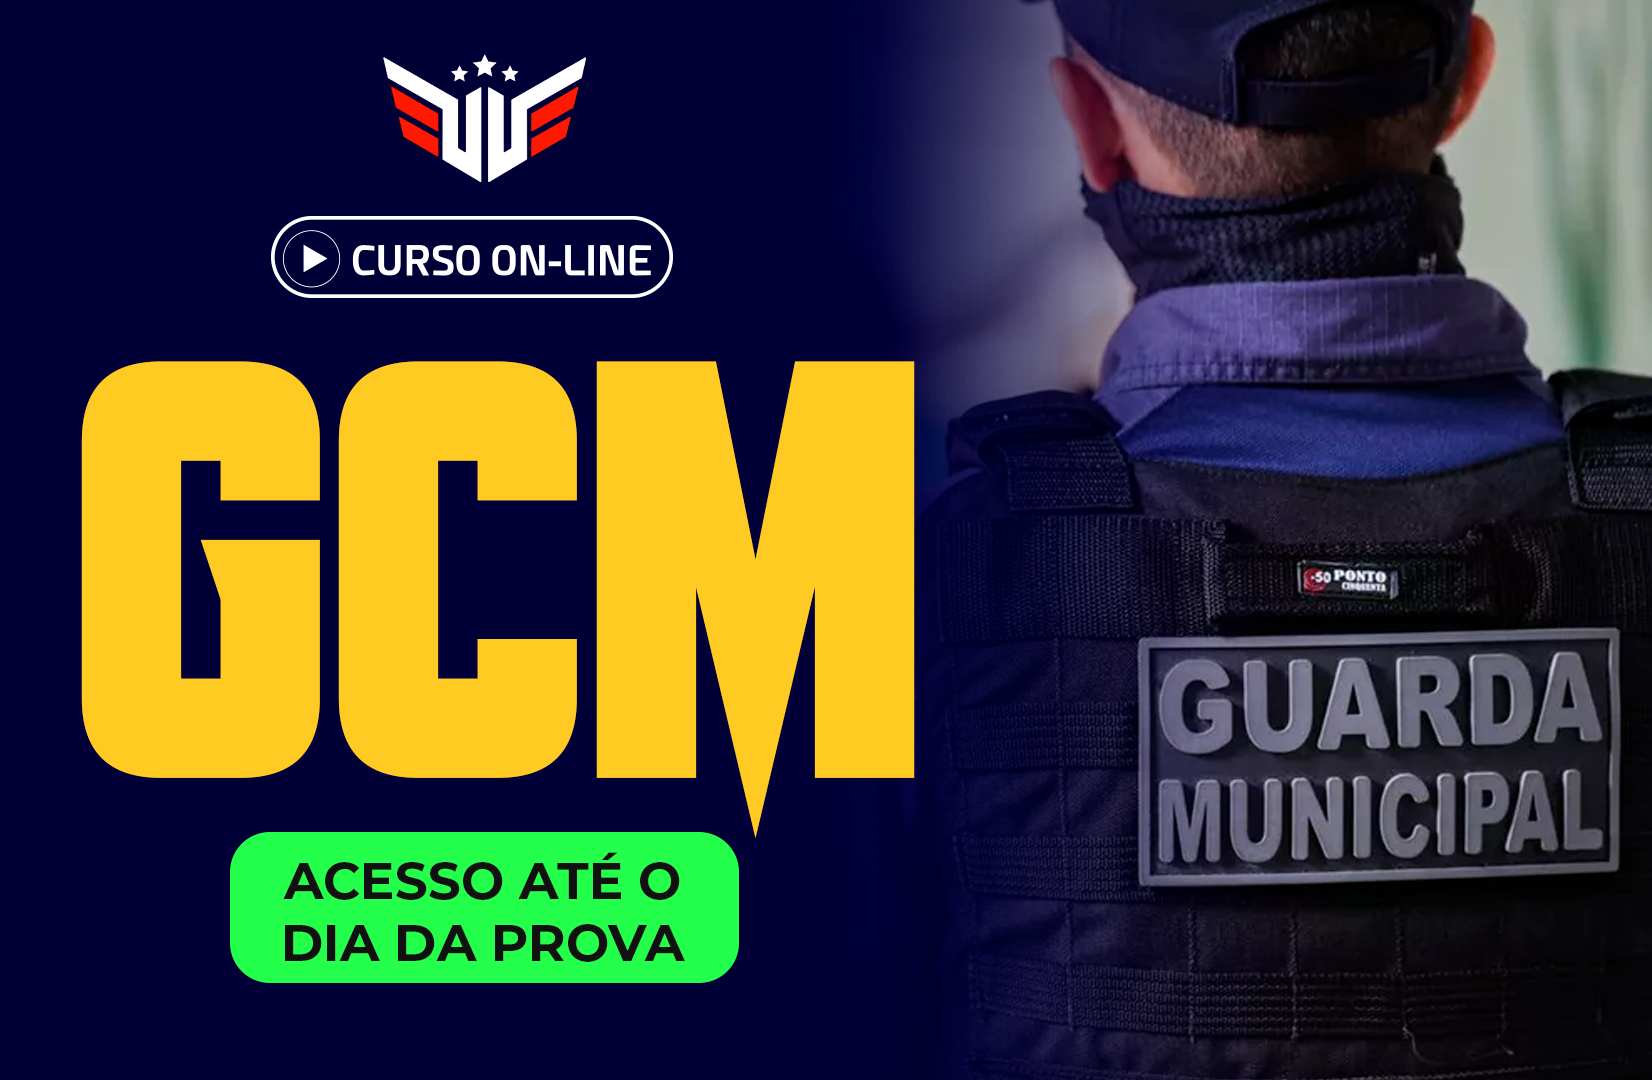 Guarda Civil Municipal de Guarulhos - Acesso até o dia da prova